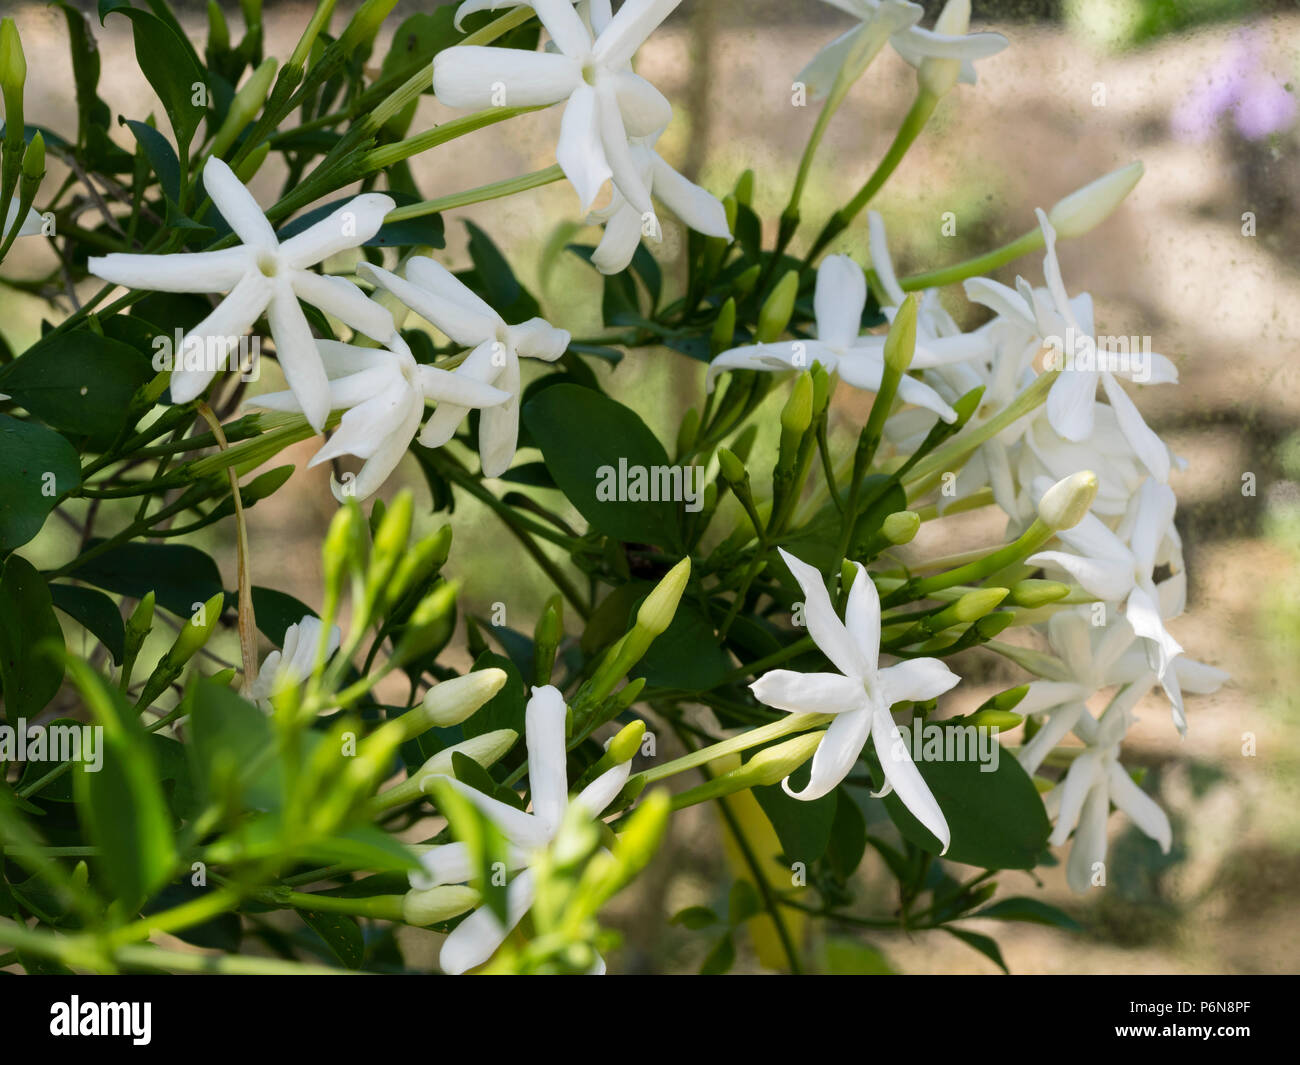 White,scented summer flowers of the tender climbing jasmine, Jasminum angulare Stock Photo